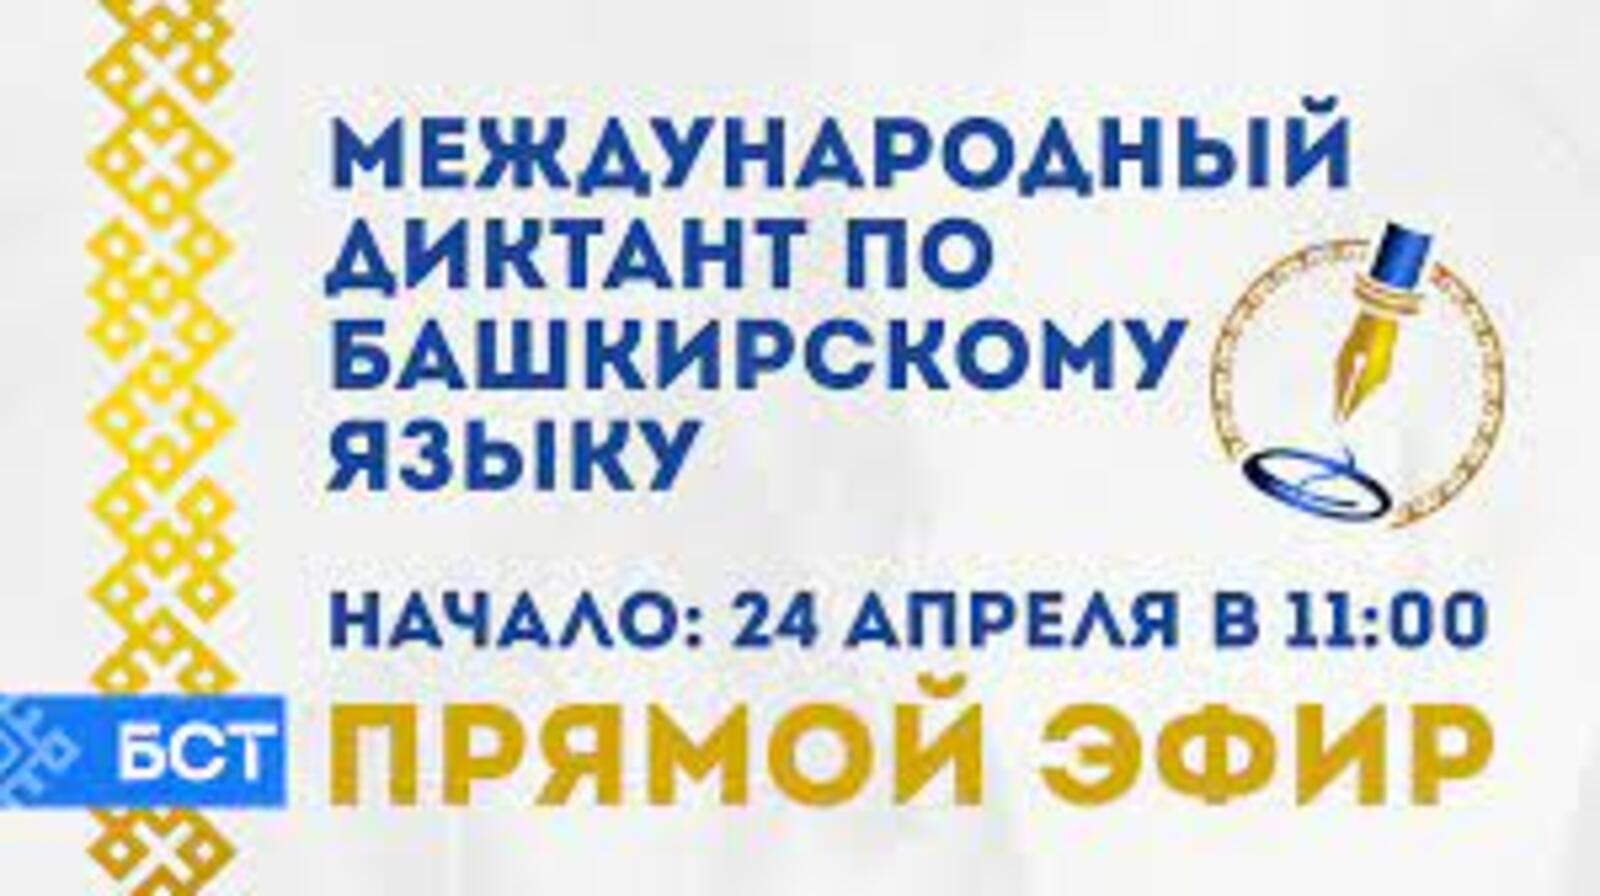 23 апреля в Башкортостане пройдет международный диктант по башкирскому языку